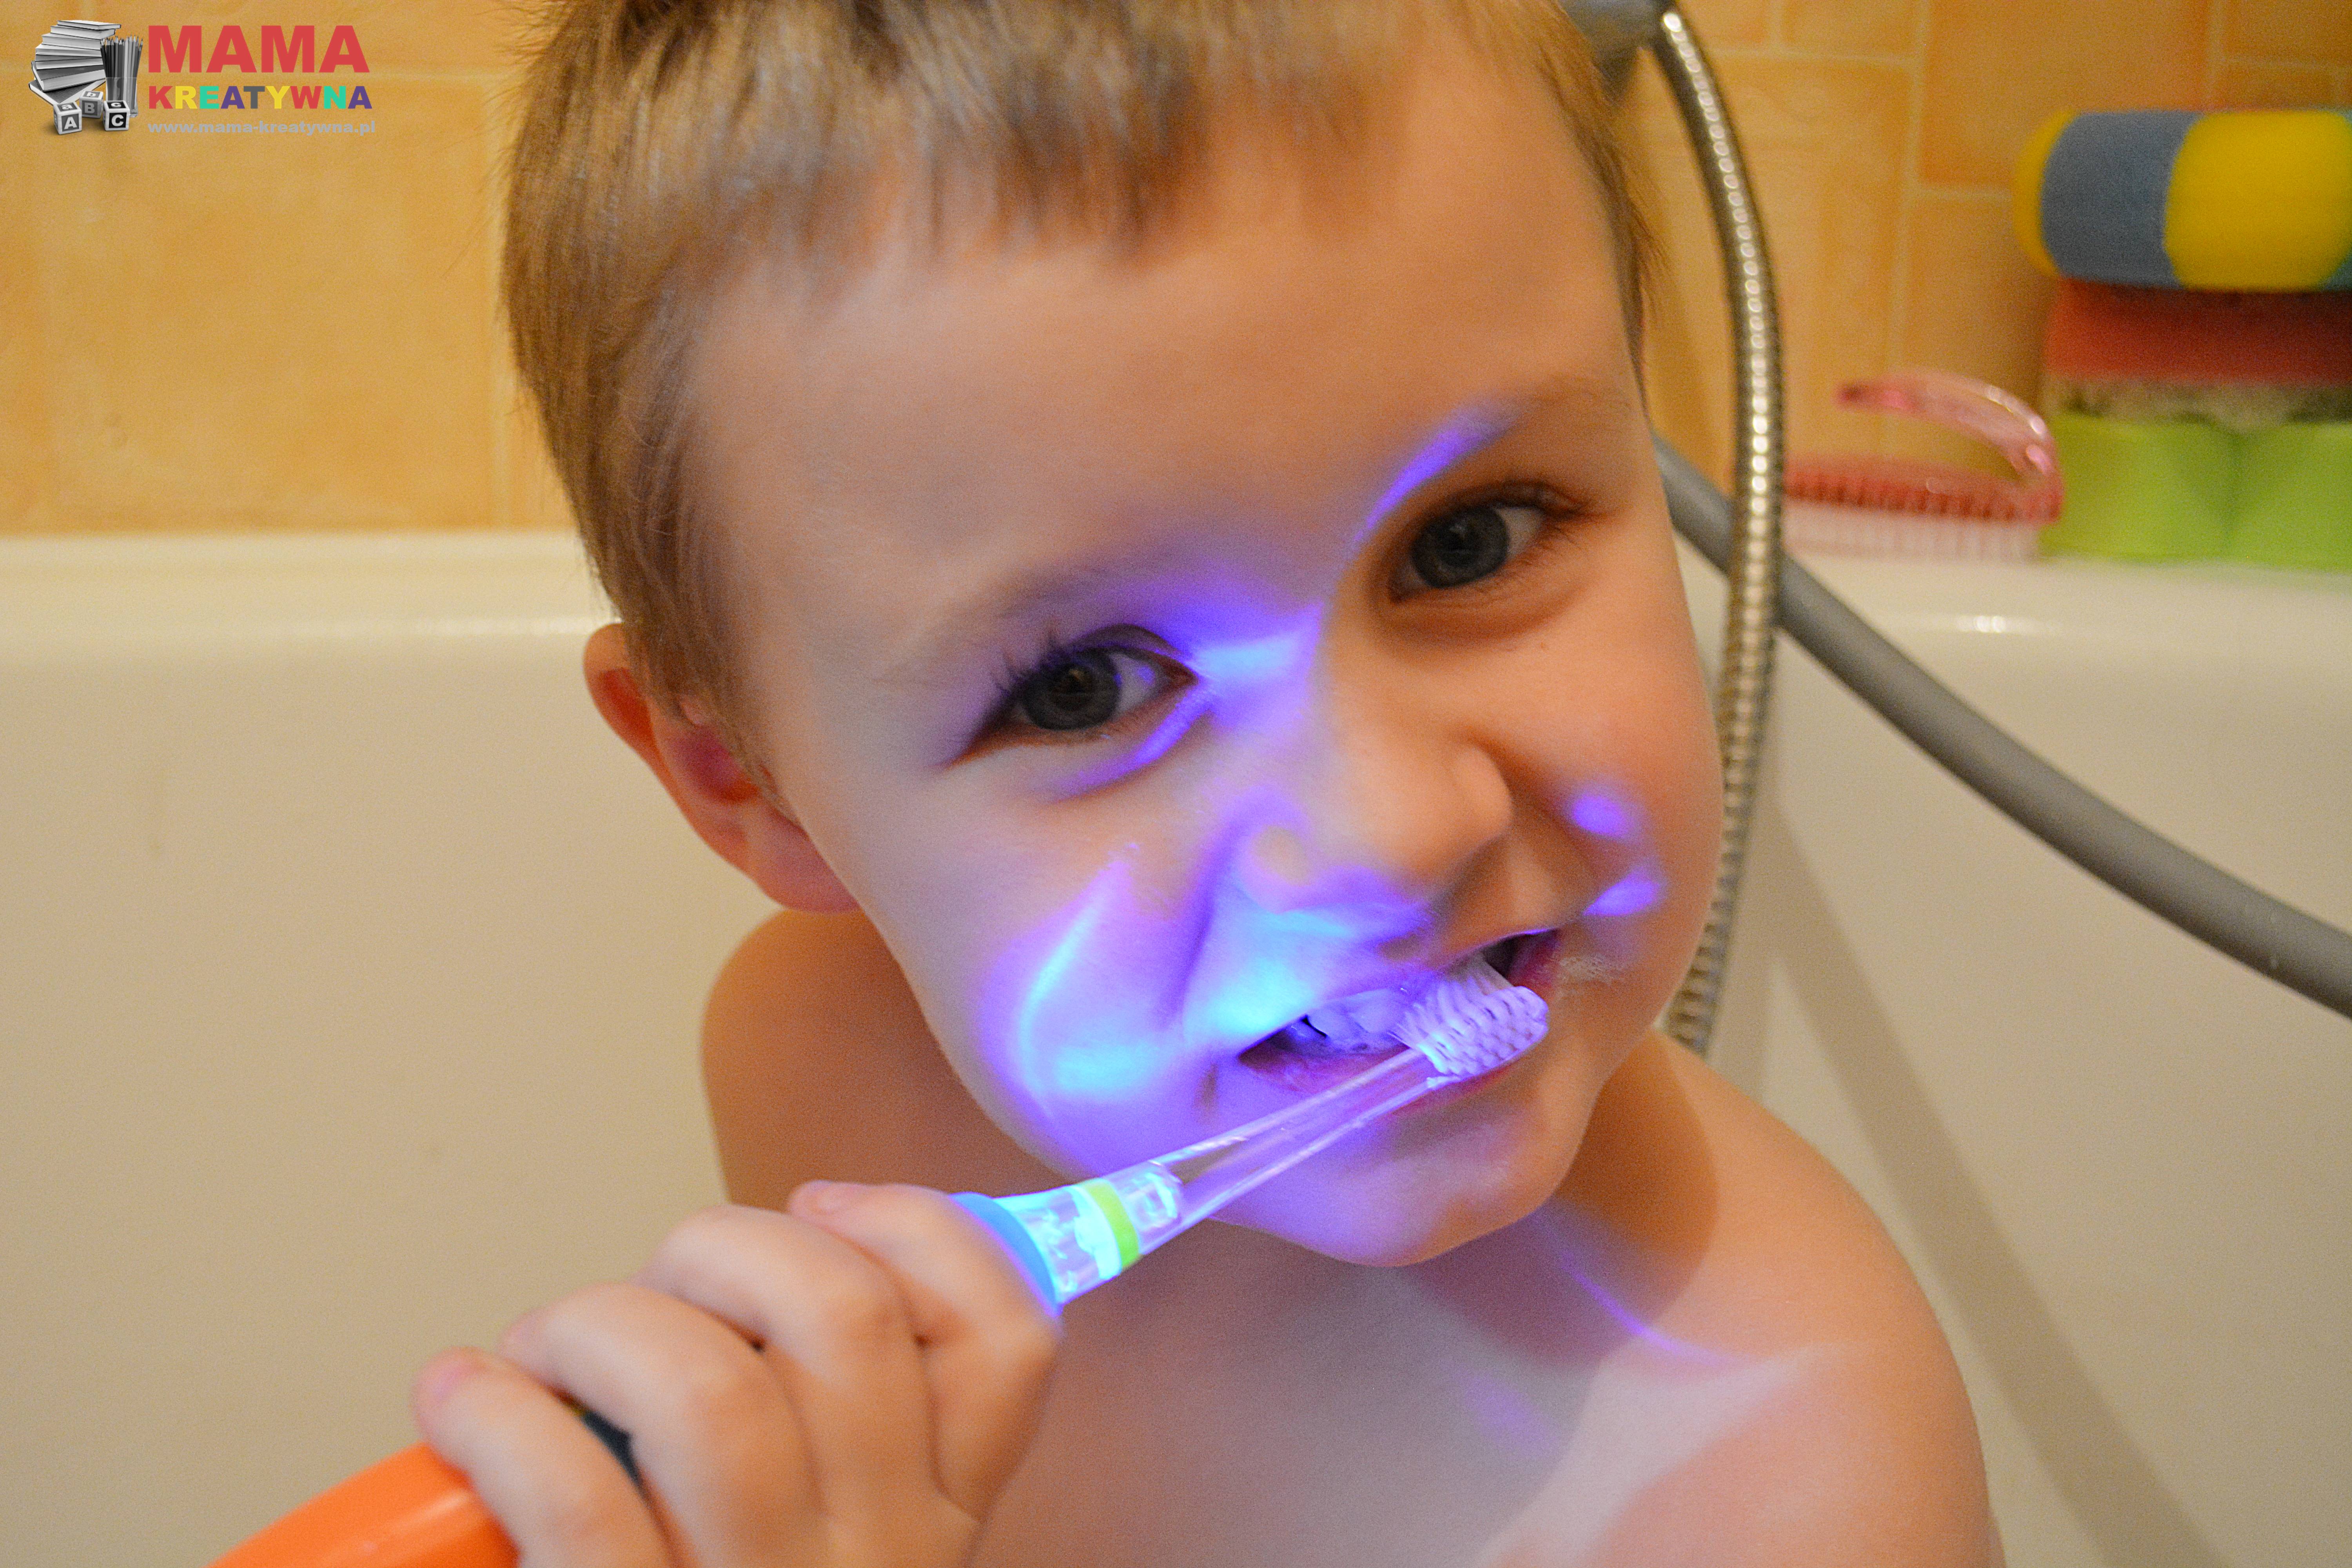 pielęgnacja zębów u dzieci